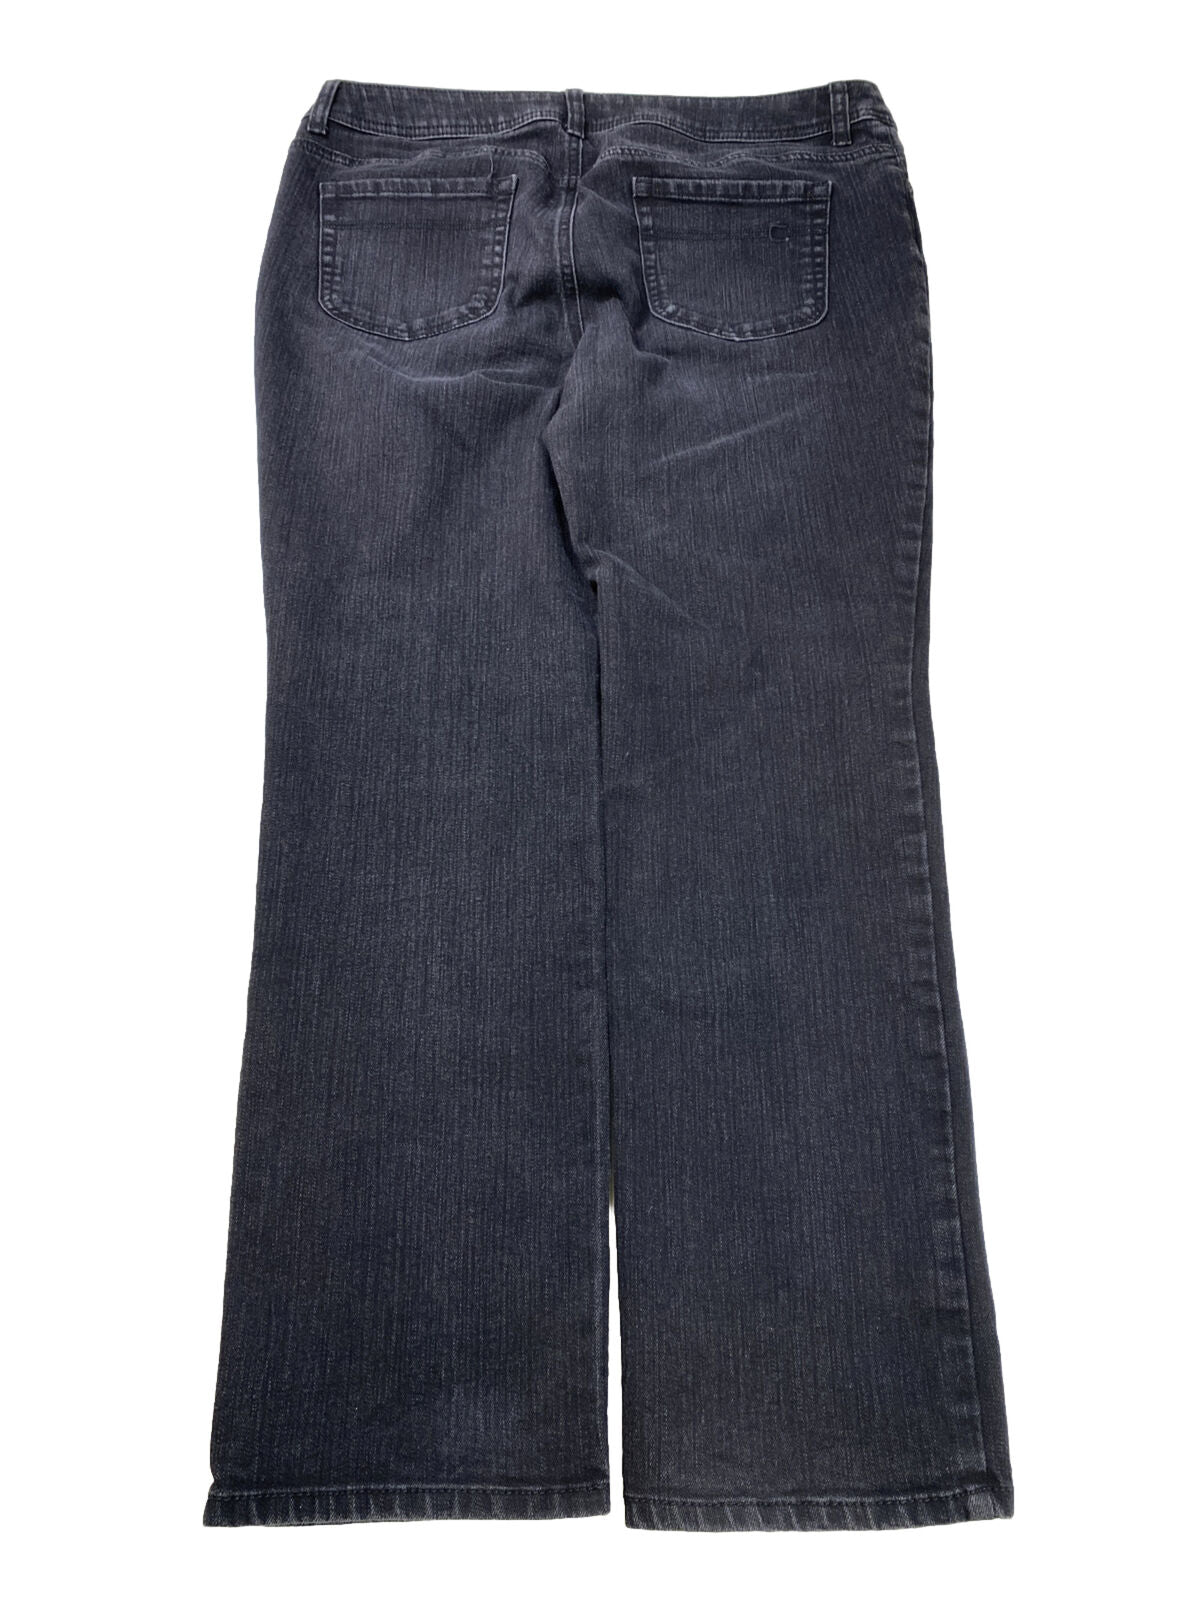 Chico's Women's Black Straight Leg Denim Jeans - 2 Short